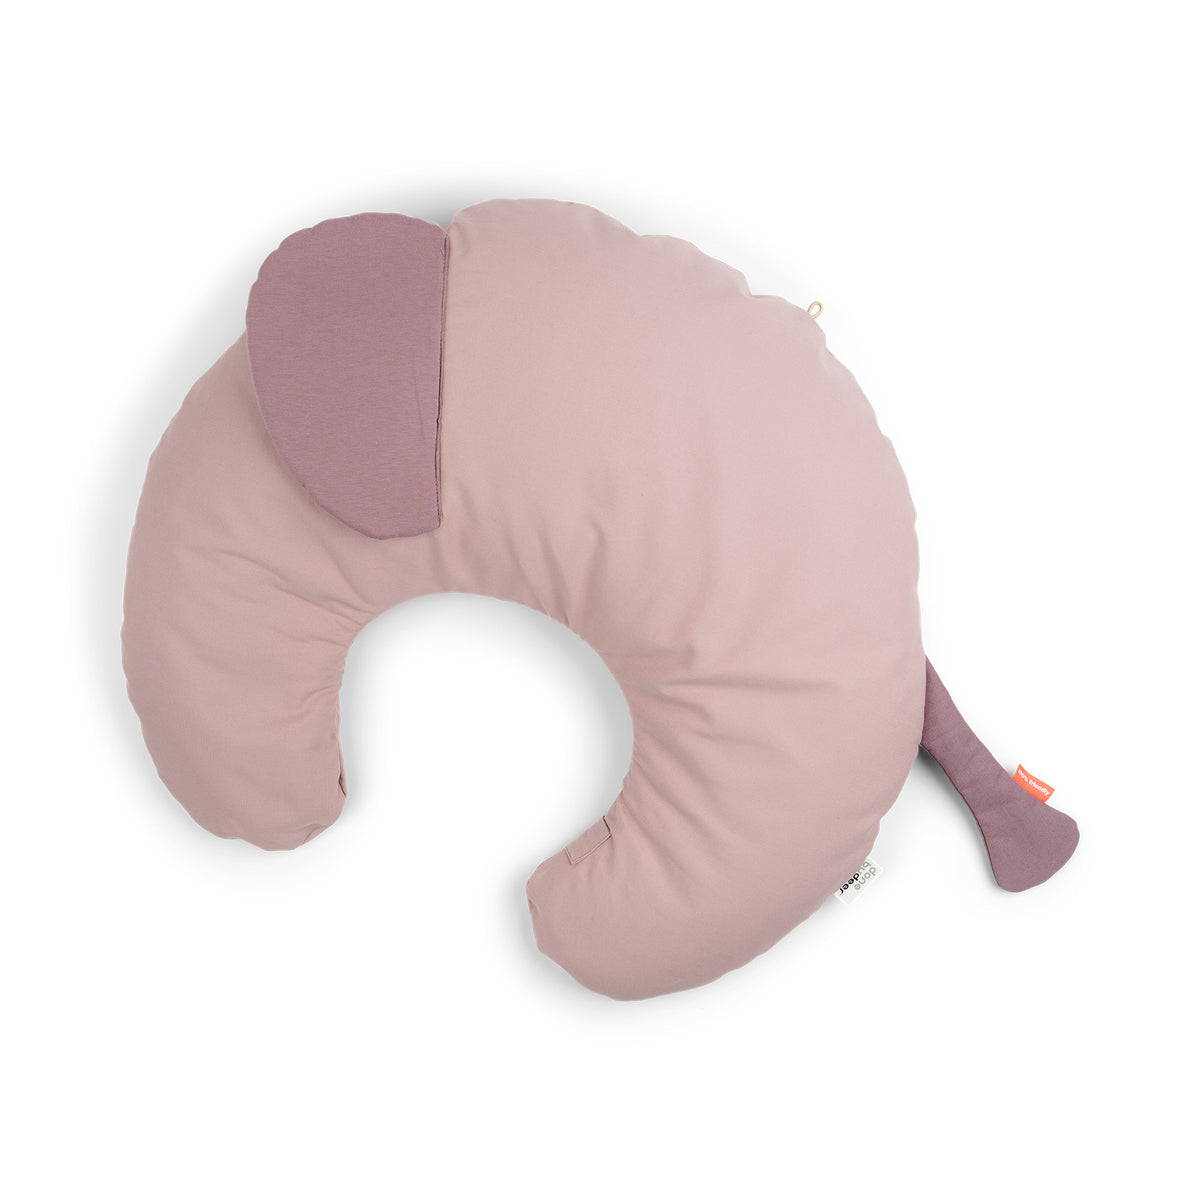 Nursing & baby pillow - Elphee - Powder - Front